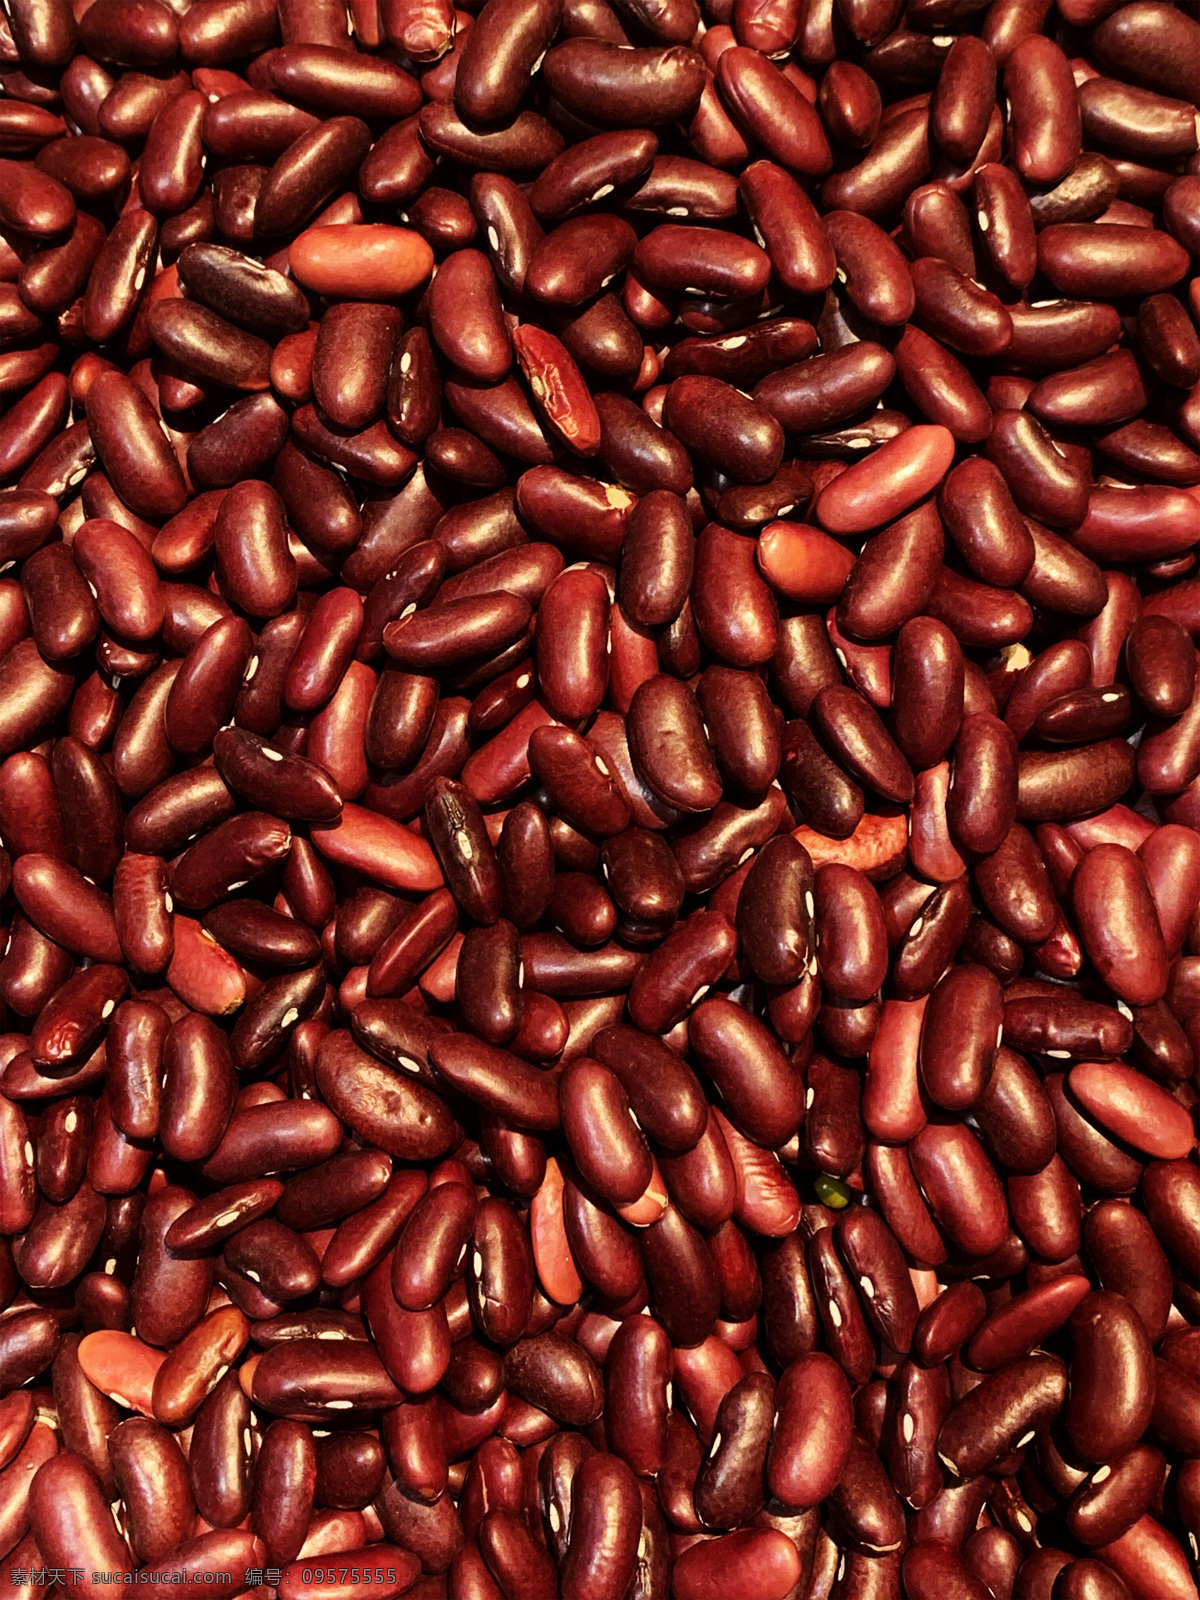 红腰豆图片 红豆 红腰豆 豆 豆子 豆类 农产品 农家特产 一堆红腰豆 生物世界 蔬菜